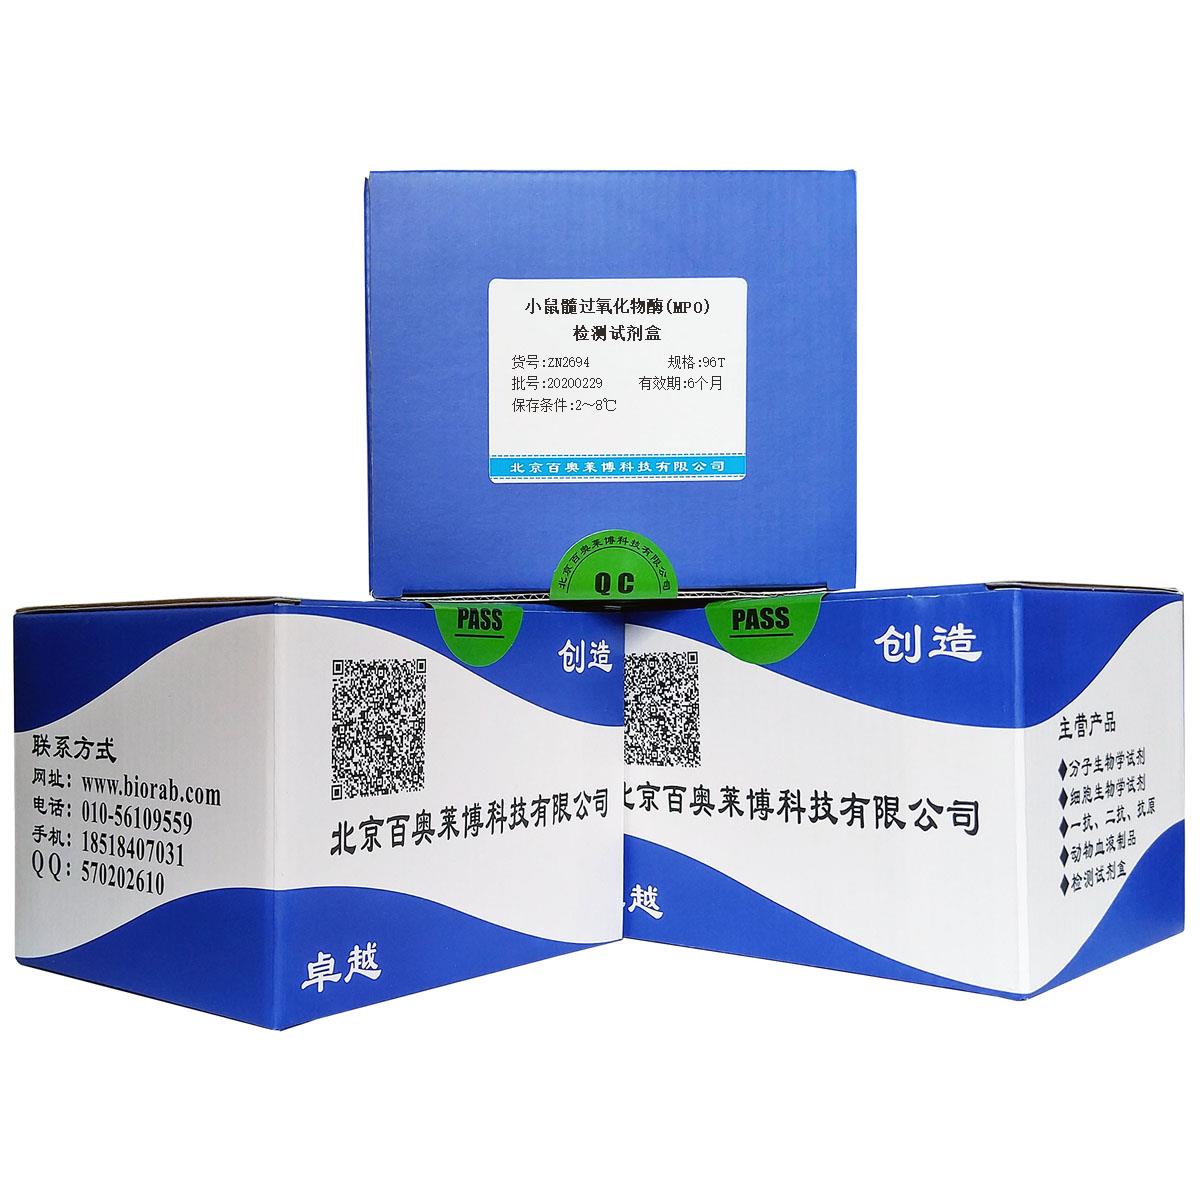 小鼠髓过氧化物酶(MPO)检测试剂盒北京价格